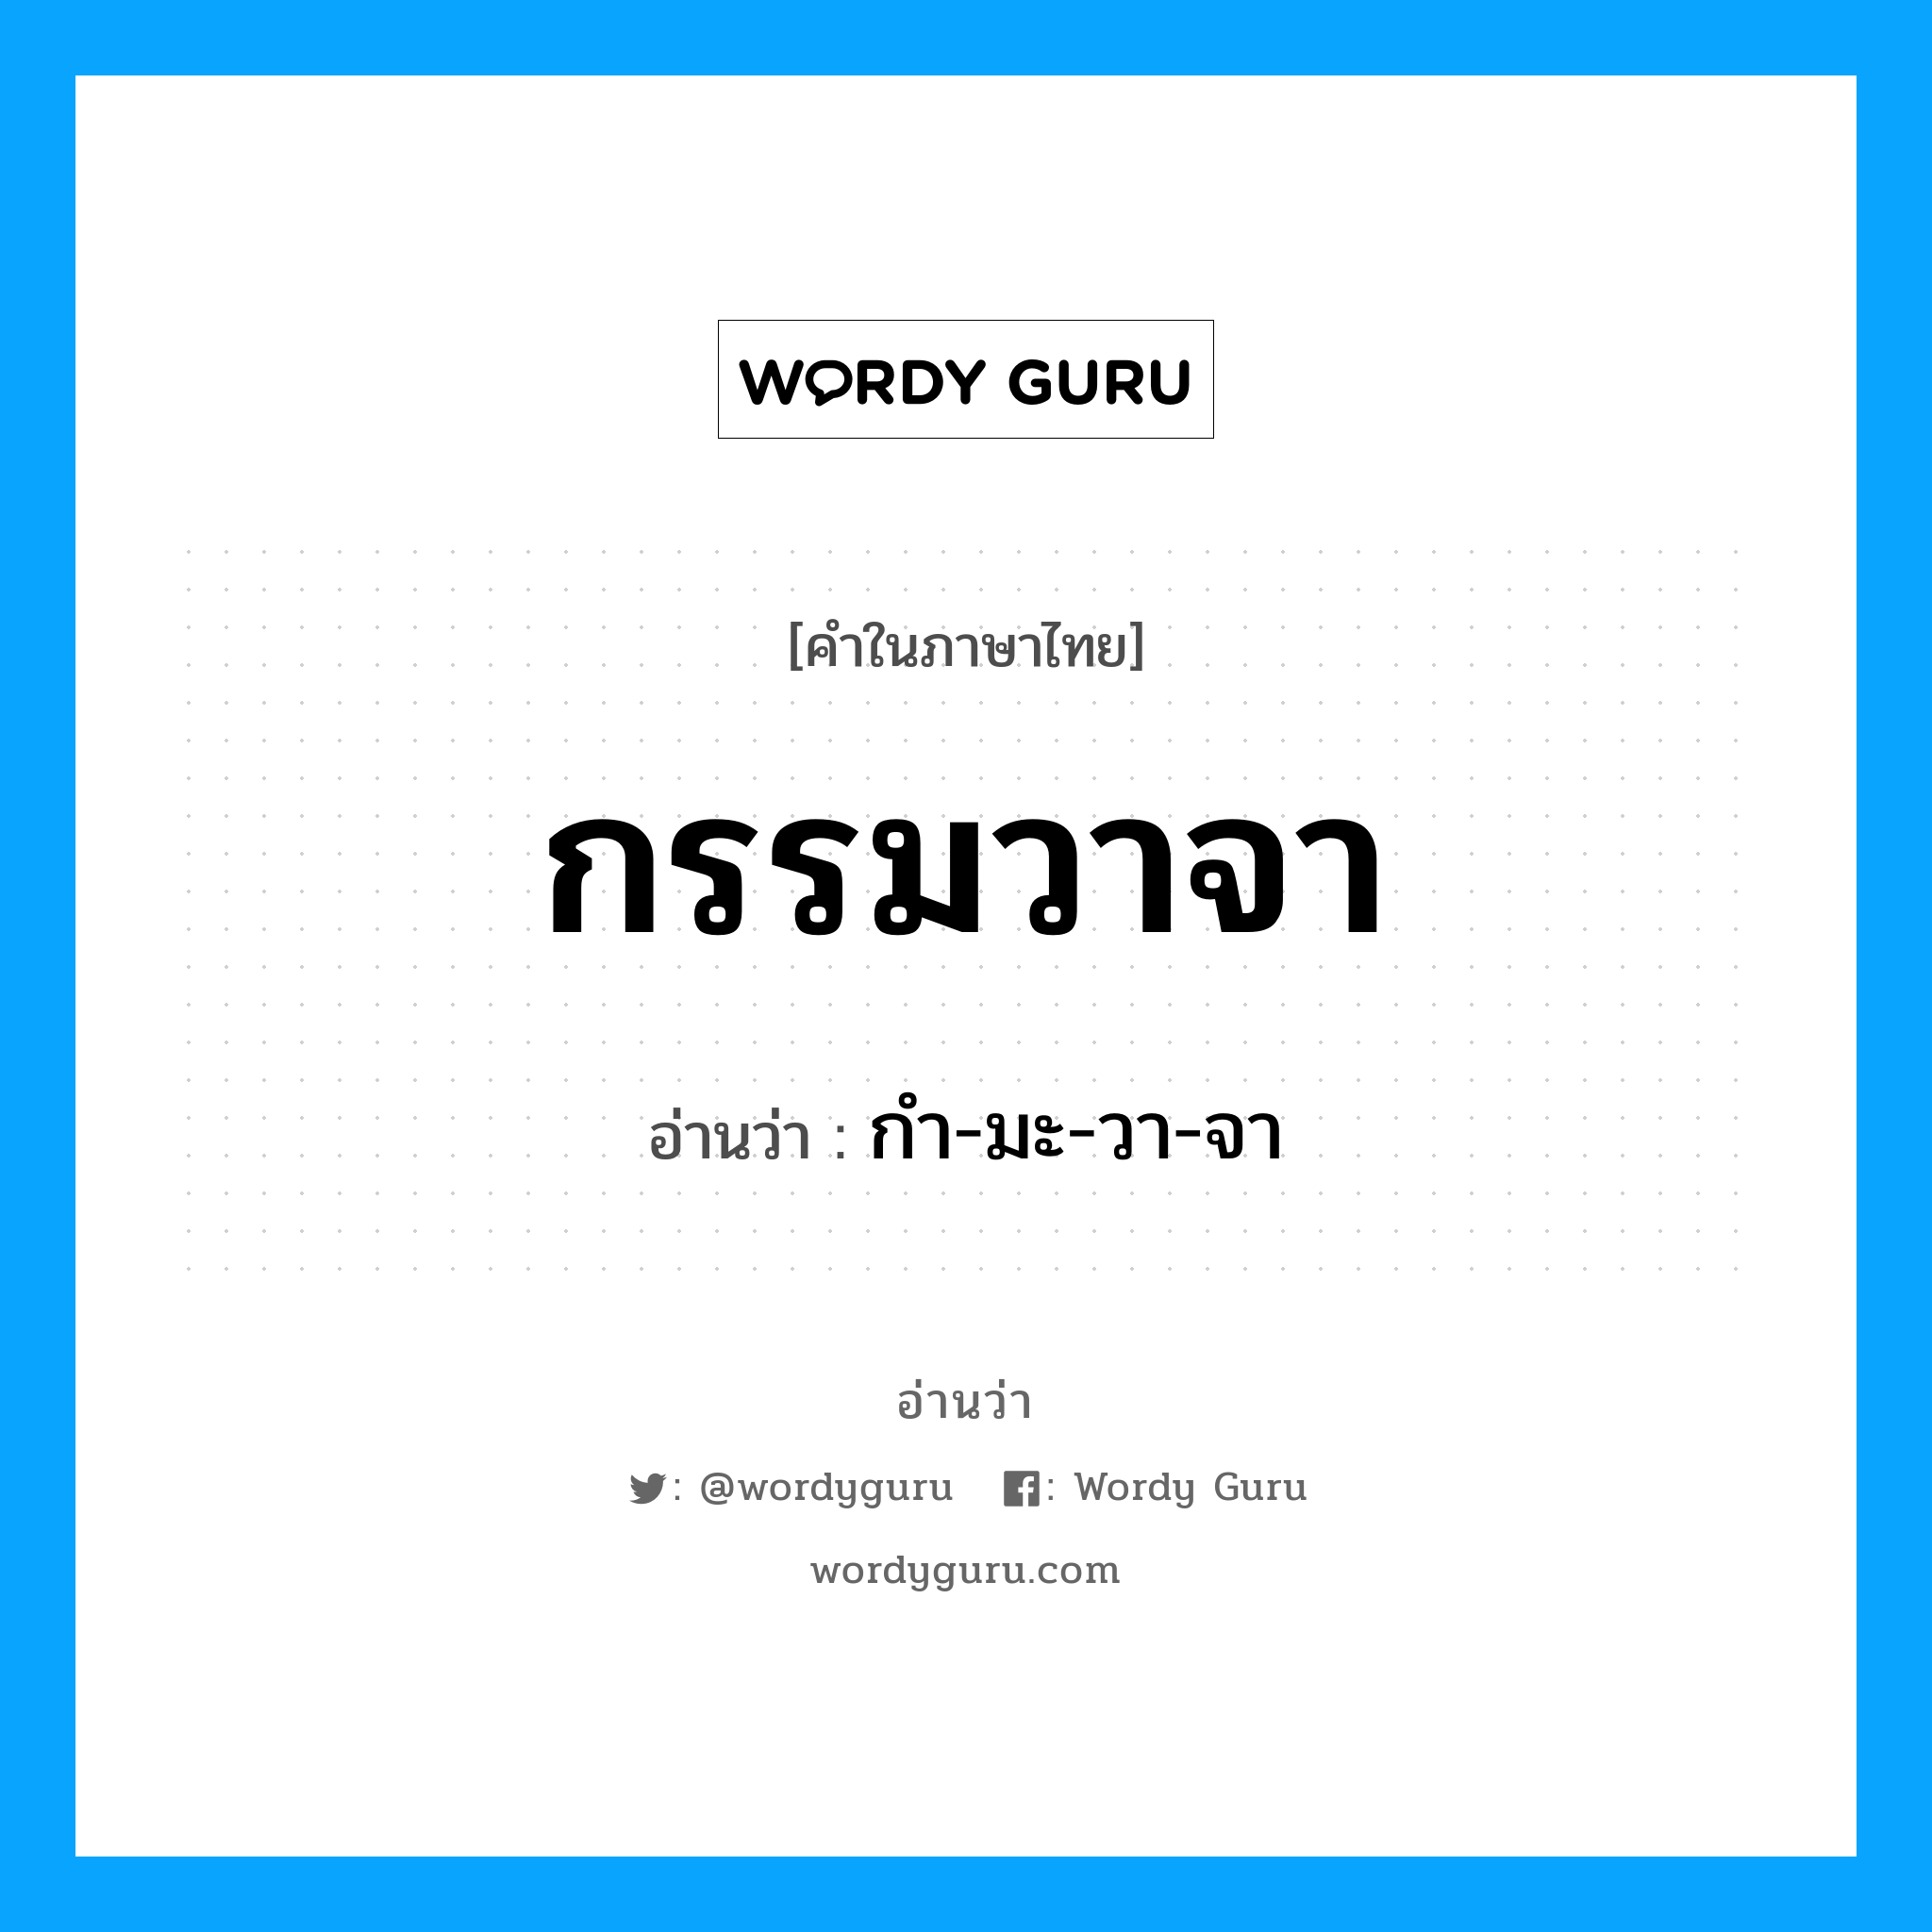 กำ-มะ-วา-จา เป็นคำอ่านของคำไหน?, คำในภาษาไทย กำ-มะ-วา-จา อ่านว่า กรรมวาจา